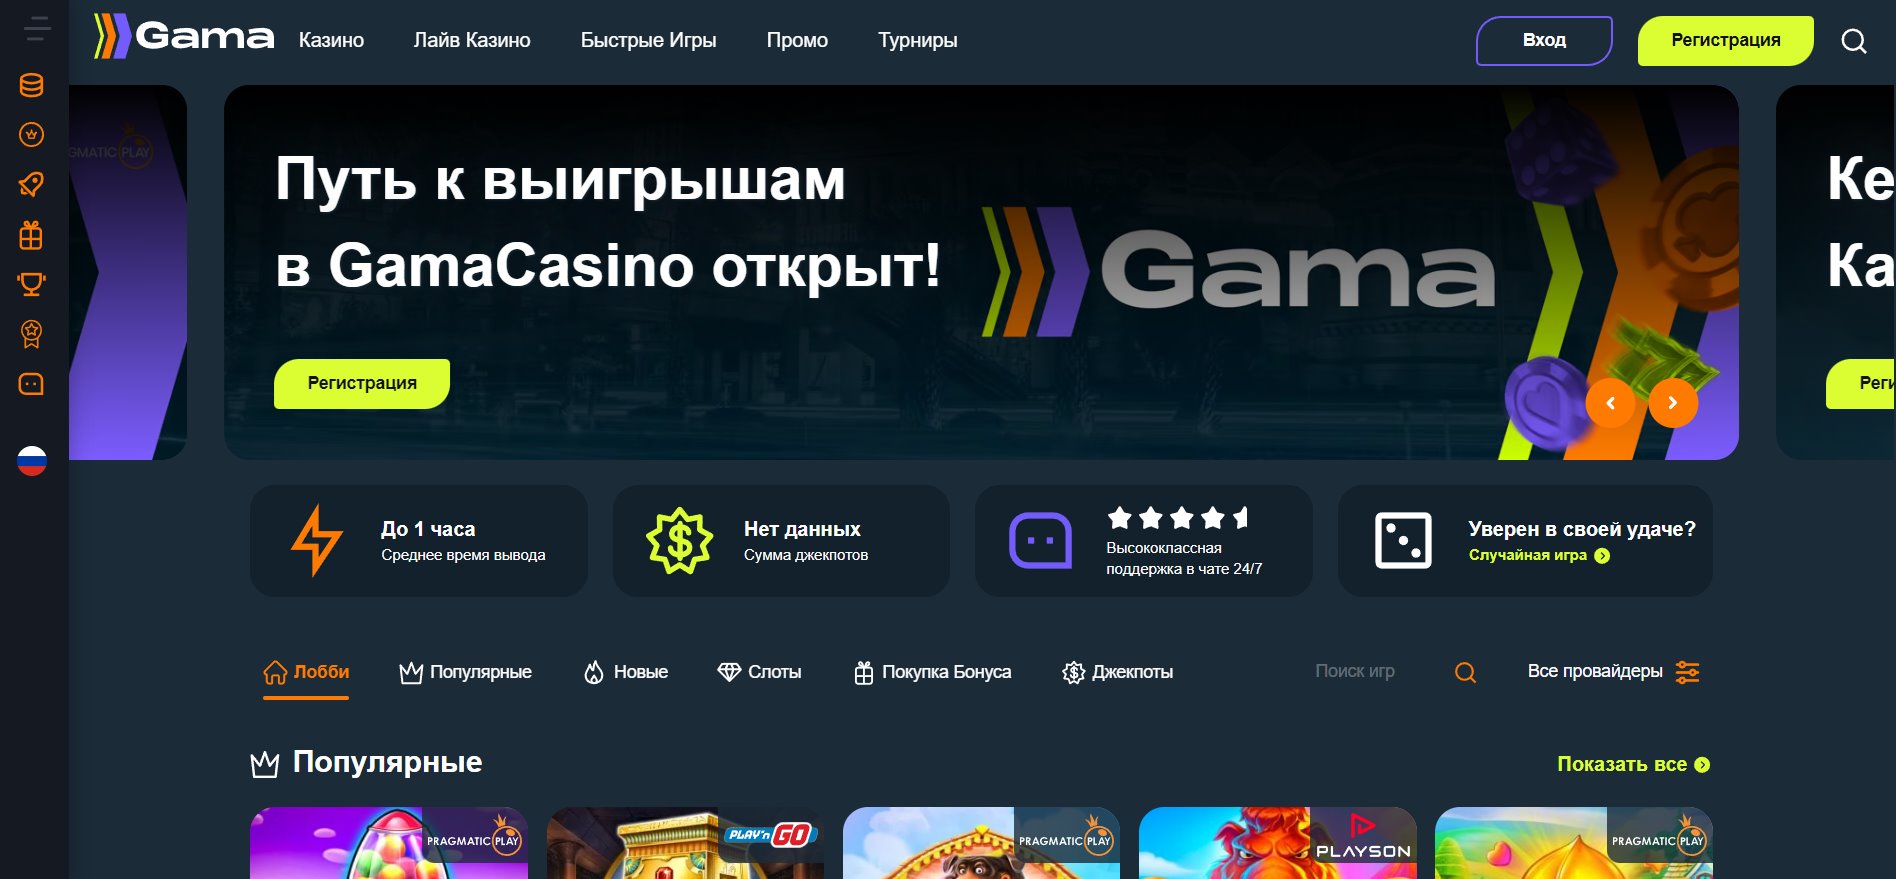 Gama Casino казино должностной сайт: праздник а также зарегистрирование для игры в аппараты